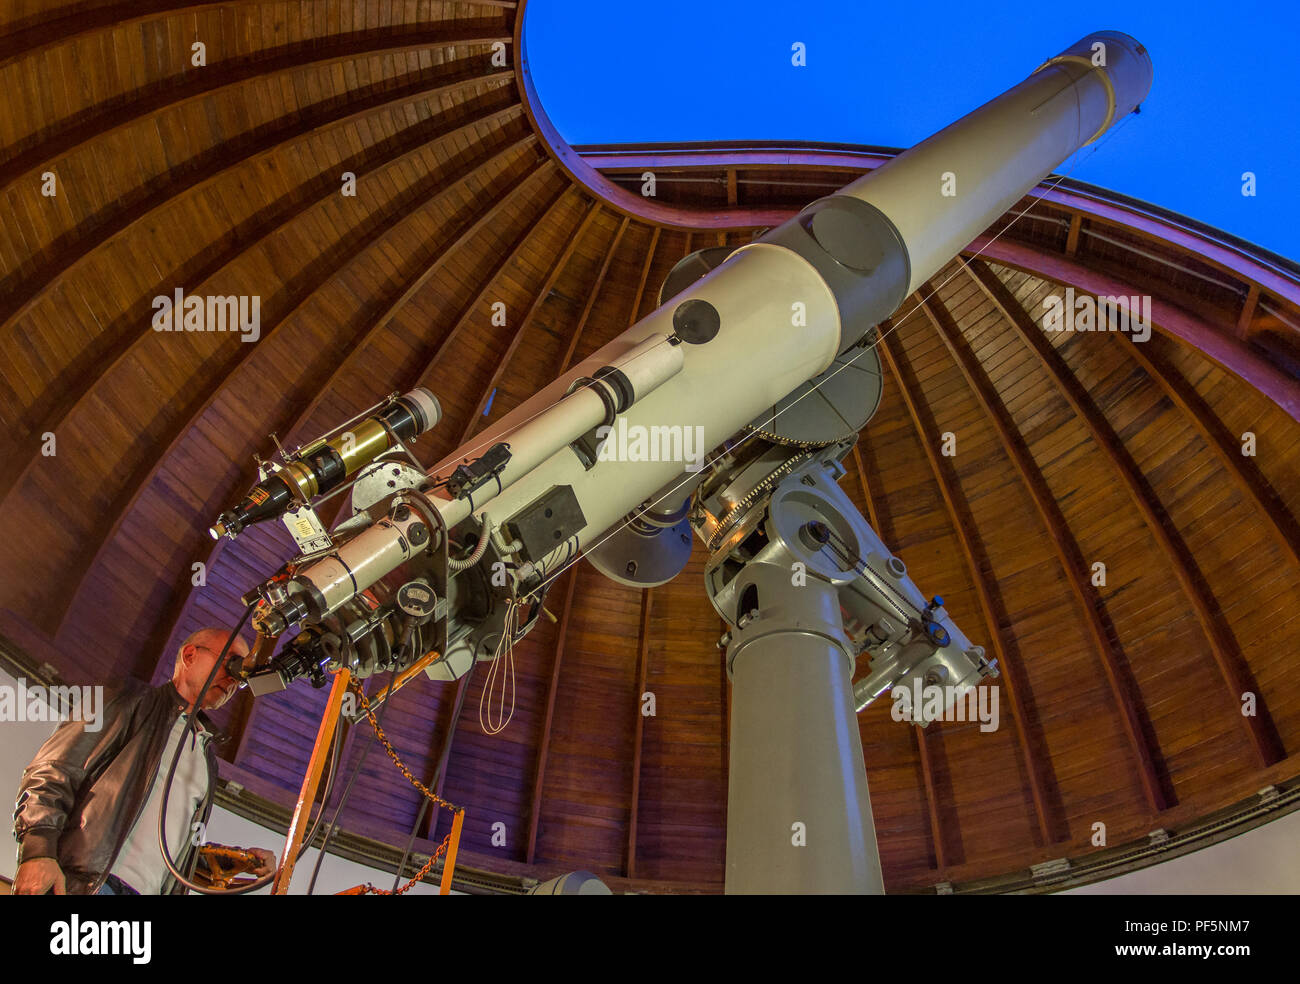 pesadilla danés Matrona Zeiss telescopio refractor de 40 cm a 5 metros de distancia focal,  construido en 1935. Specola Vaticana, el Observatorio de Castel Gandolfo  (Italia Fotografía de stock - Alamy